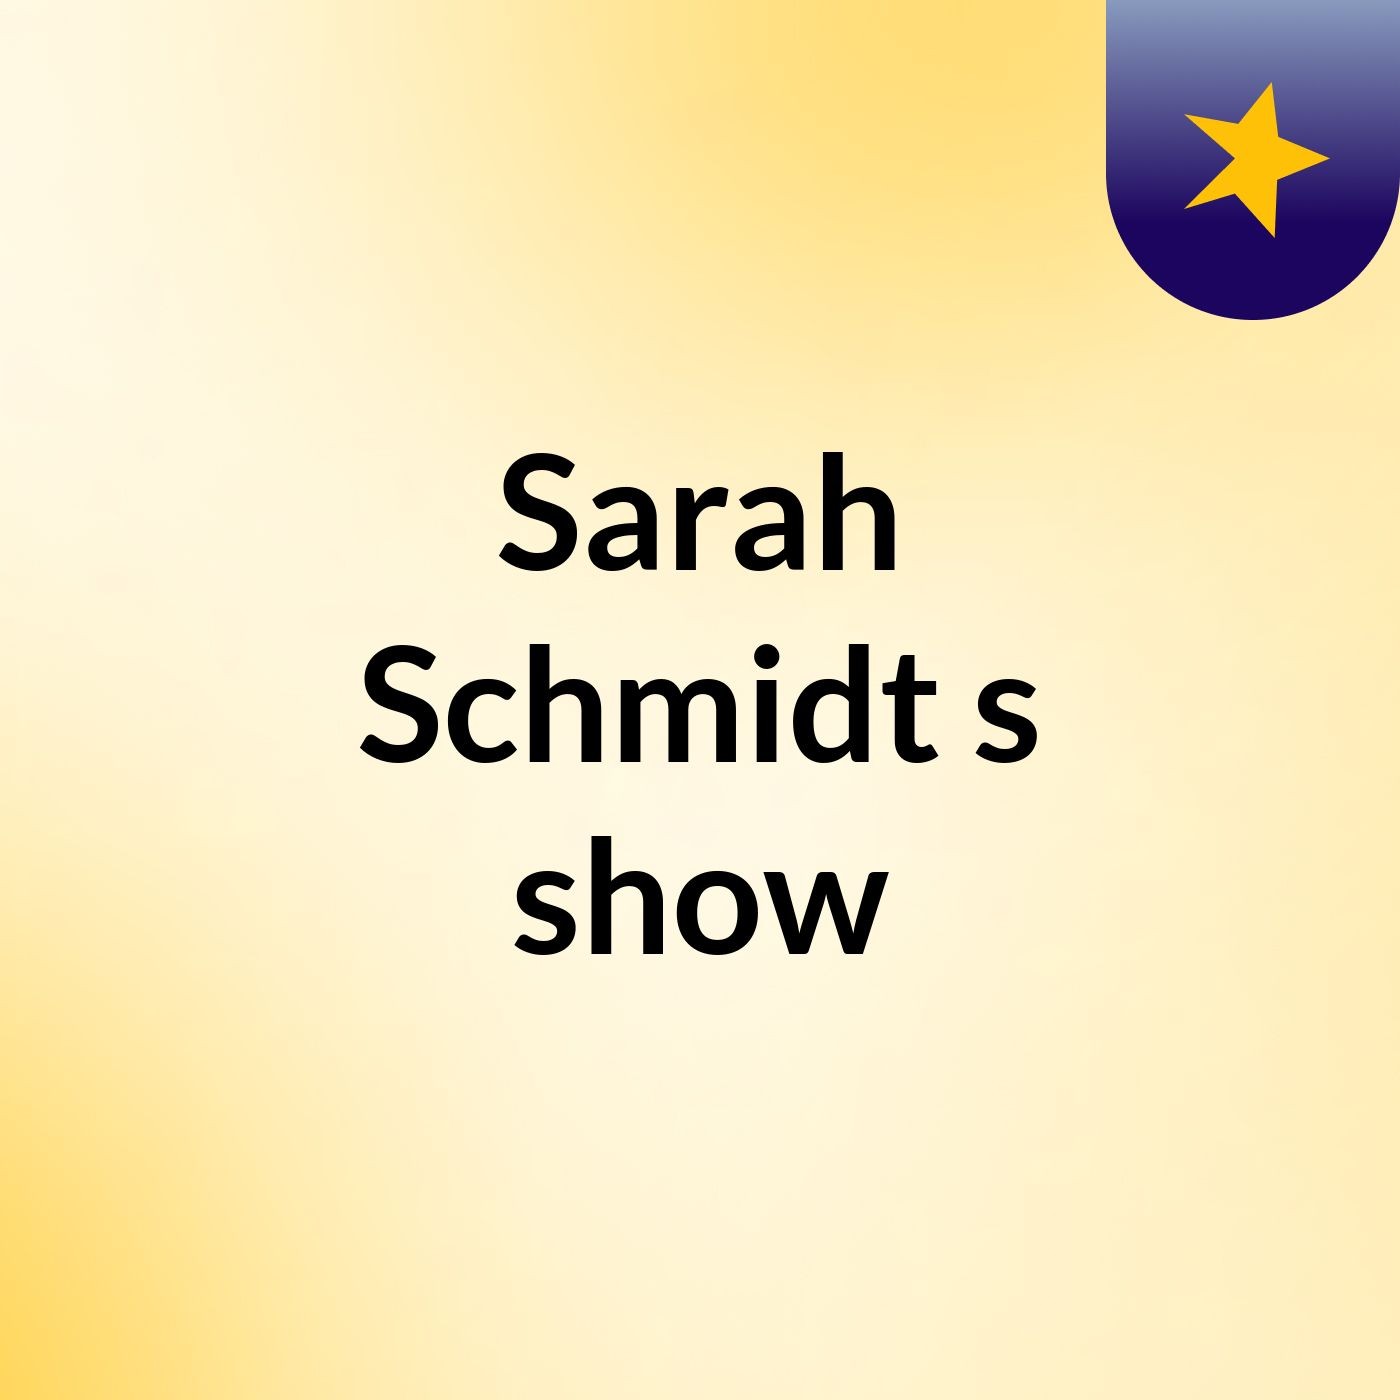 Episode 4 - Sarah Schmidt's show